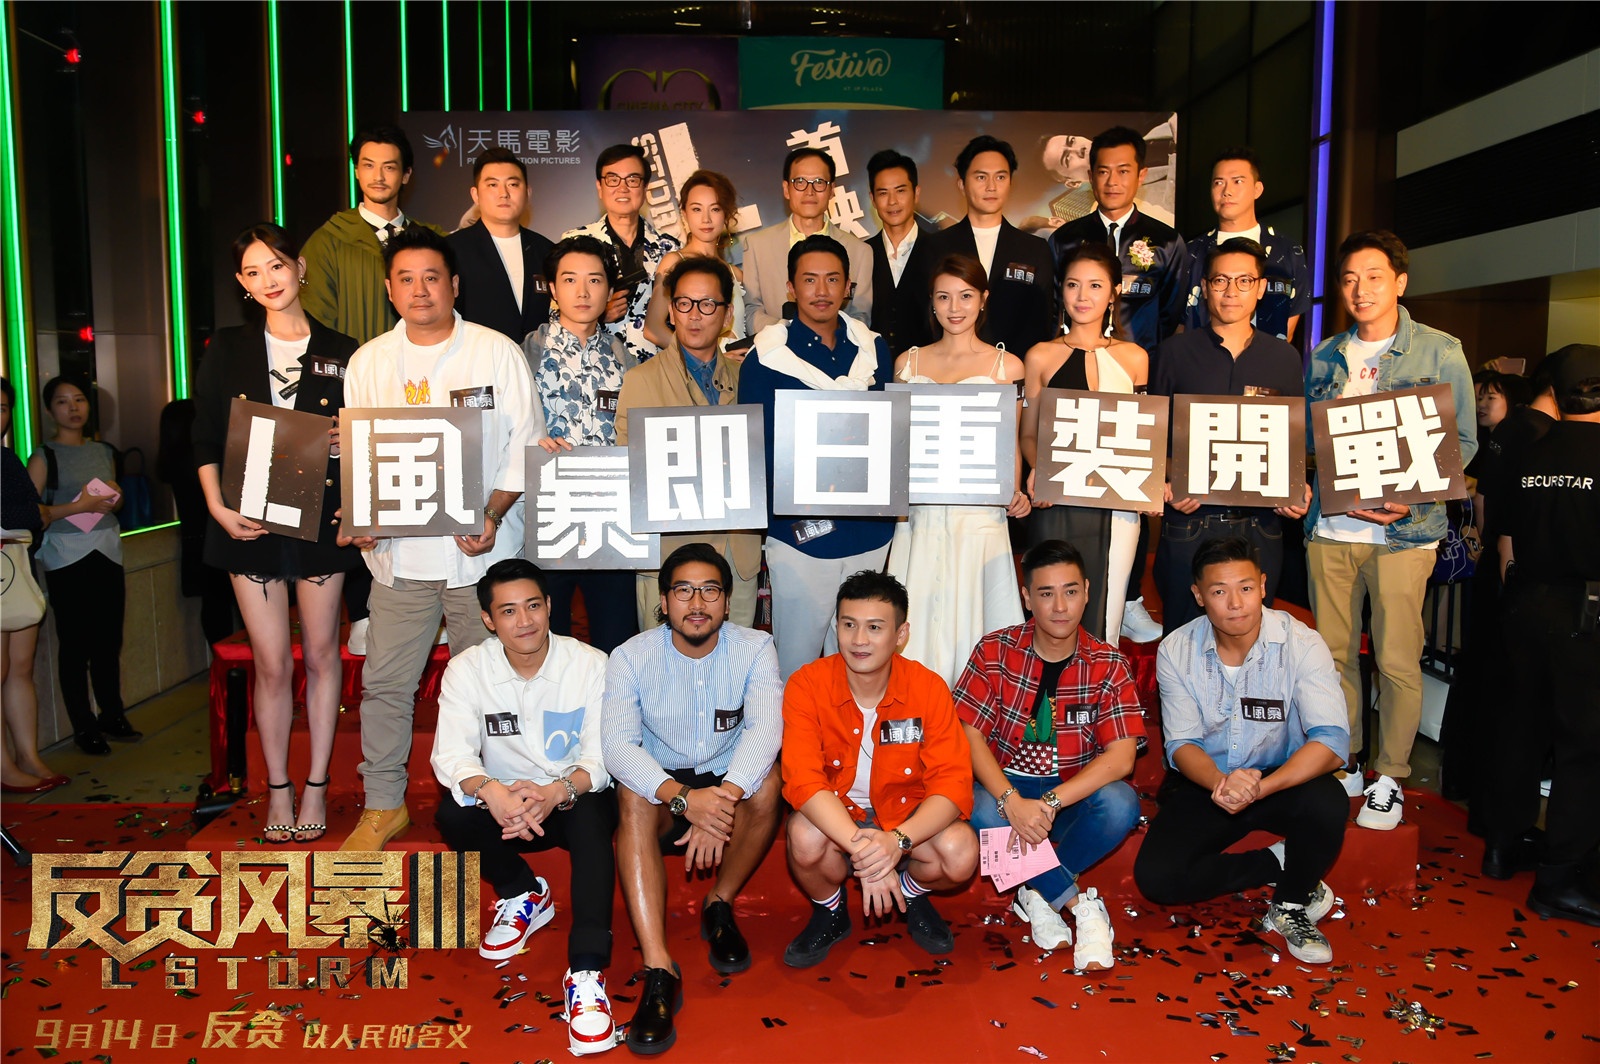 《反贪风暴3》香港抢先映 热评出炉领跑香港影市